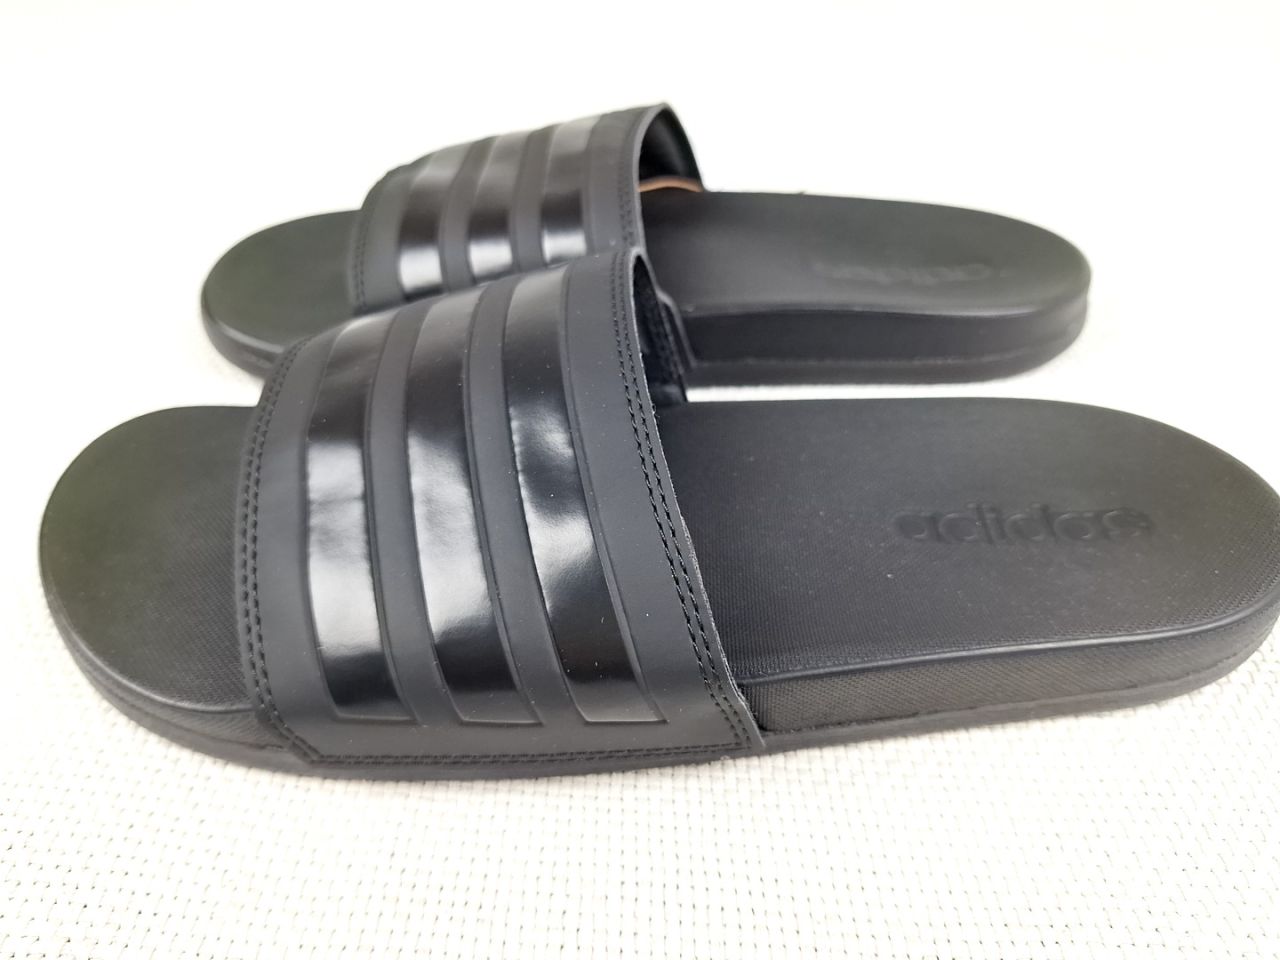 Sandále/pantofle - Adilette Comfort Adidas vel. 40